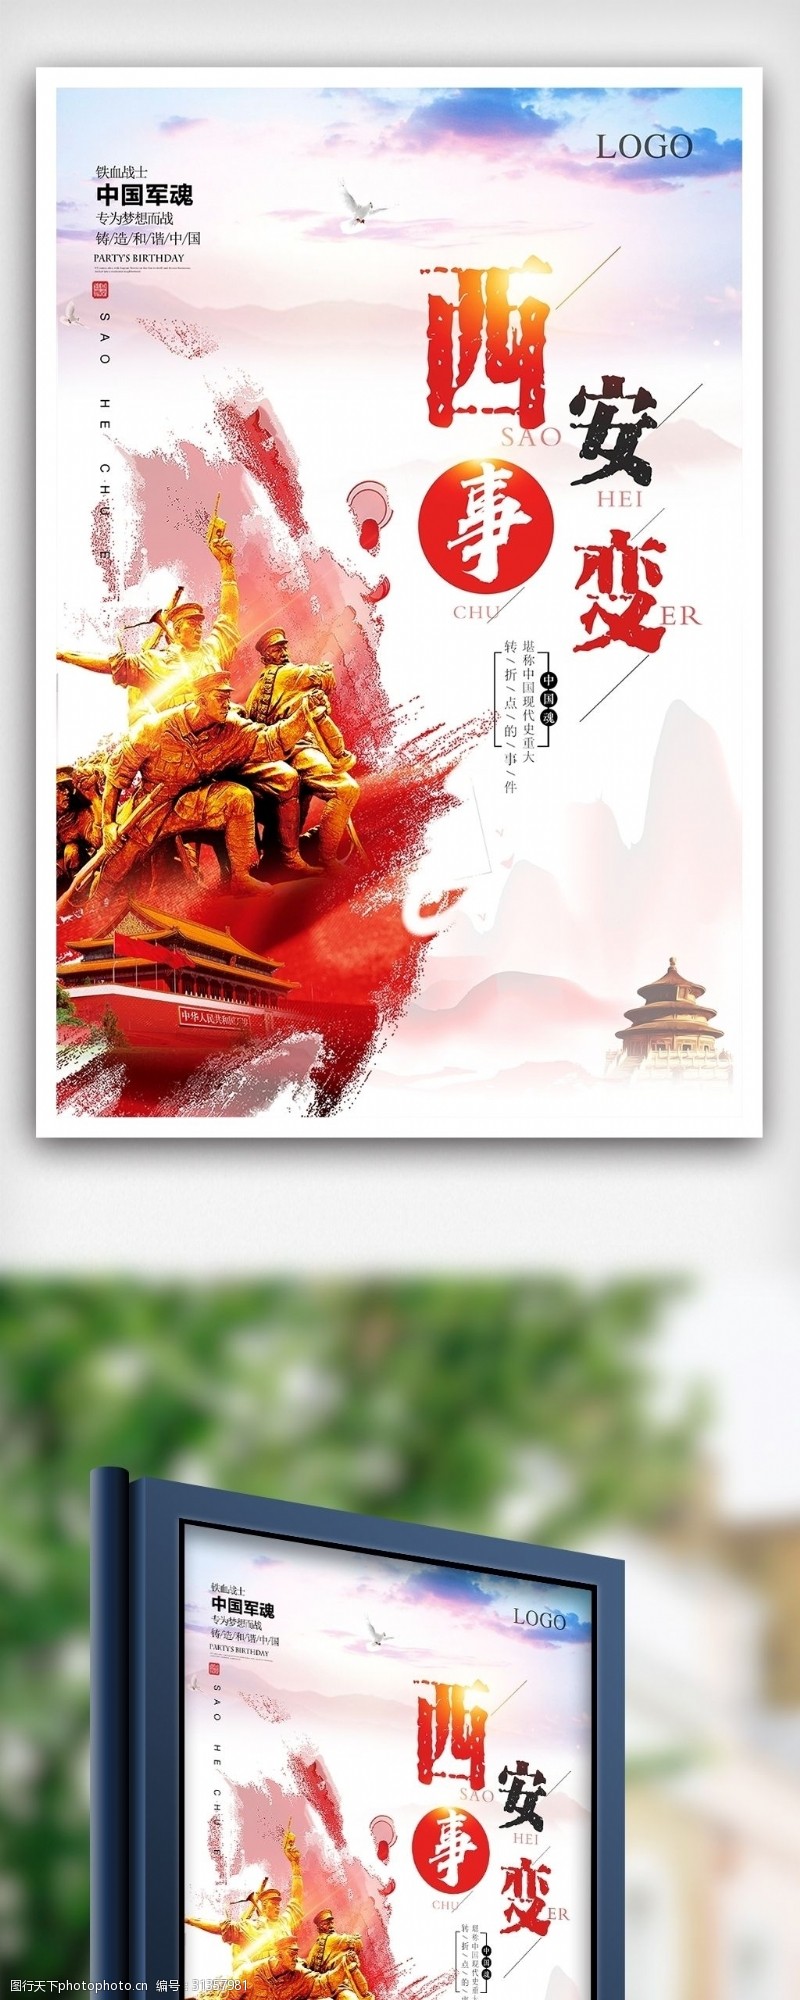 南京大屠杀西安事变纪念日宣传展板